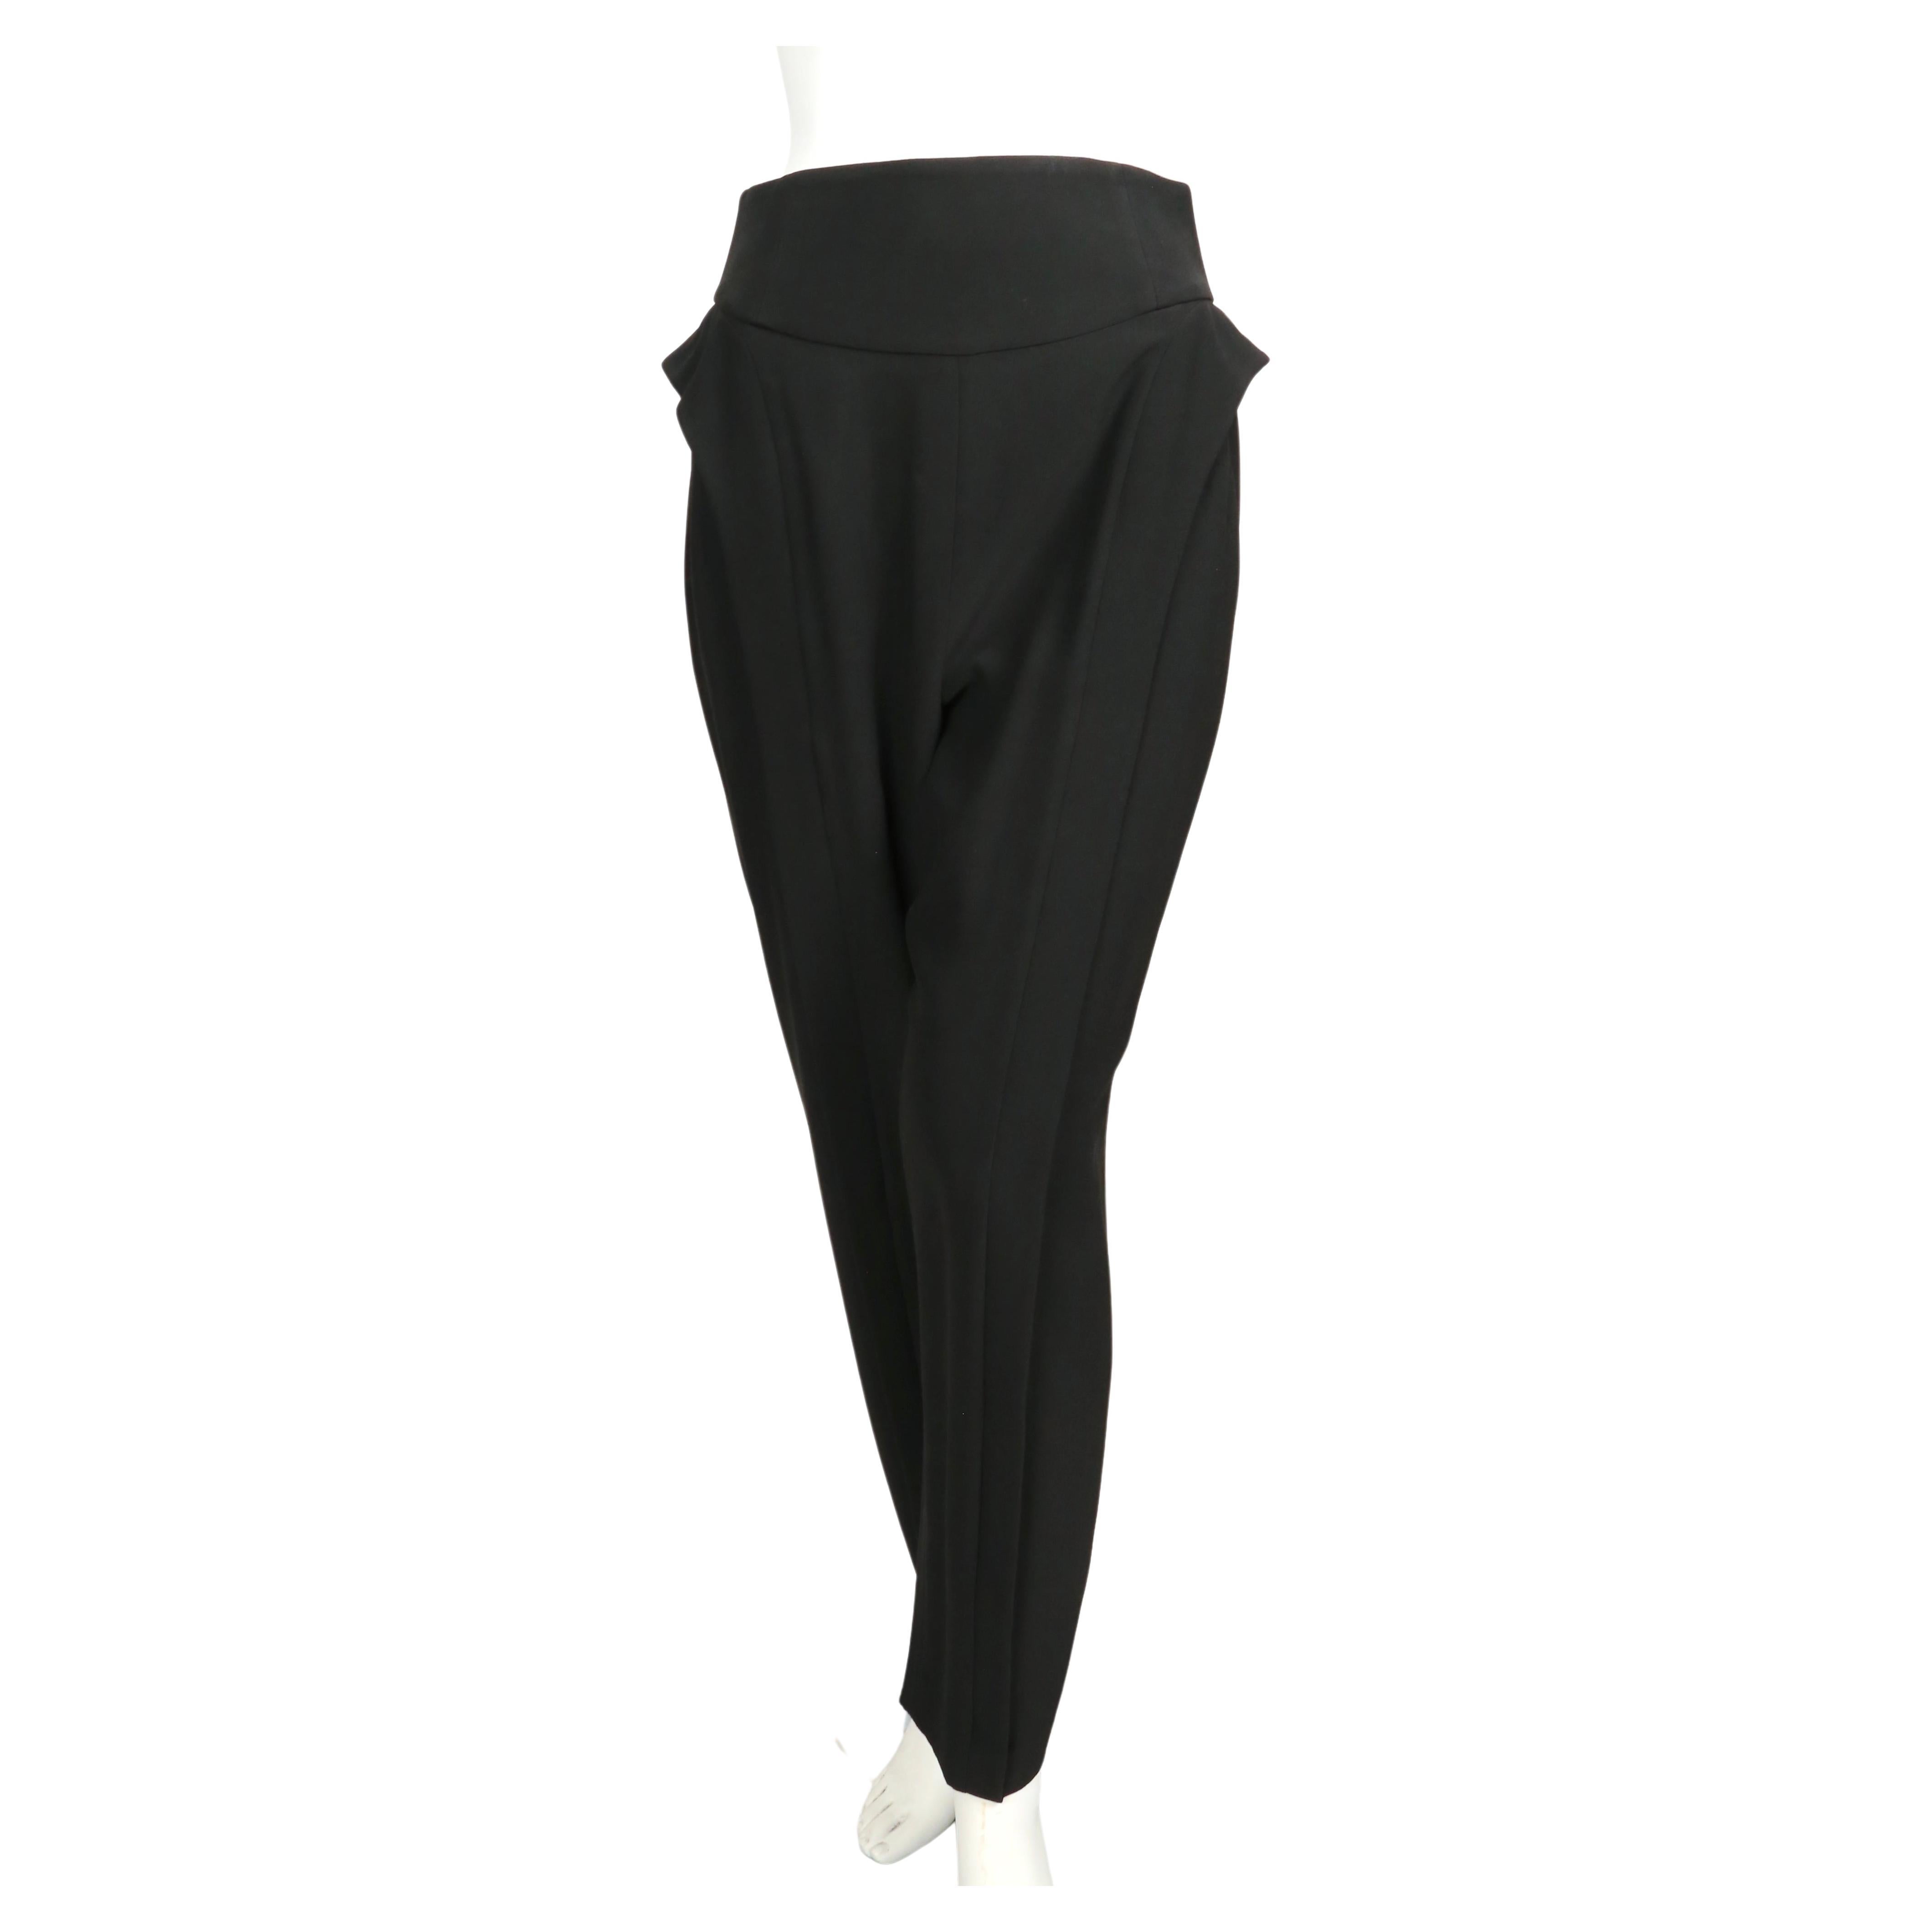 Pantalon noir taille haute à volants latéraux conçu par Alexander McQueen datant des années 2000. Labellisé taille 42 italienne. Les pantalons n'étaient pas attachés sur le mannequin français de taille 36. Mesures approximatives : taille 27